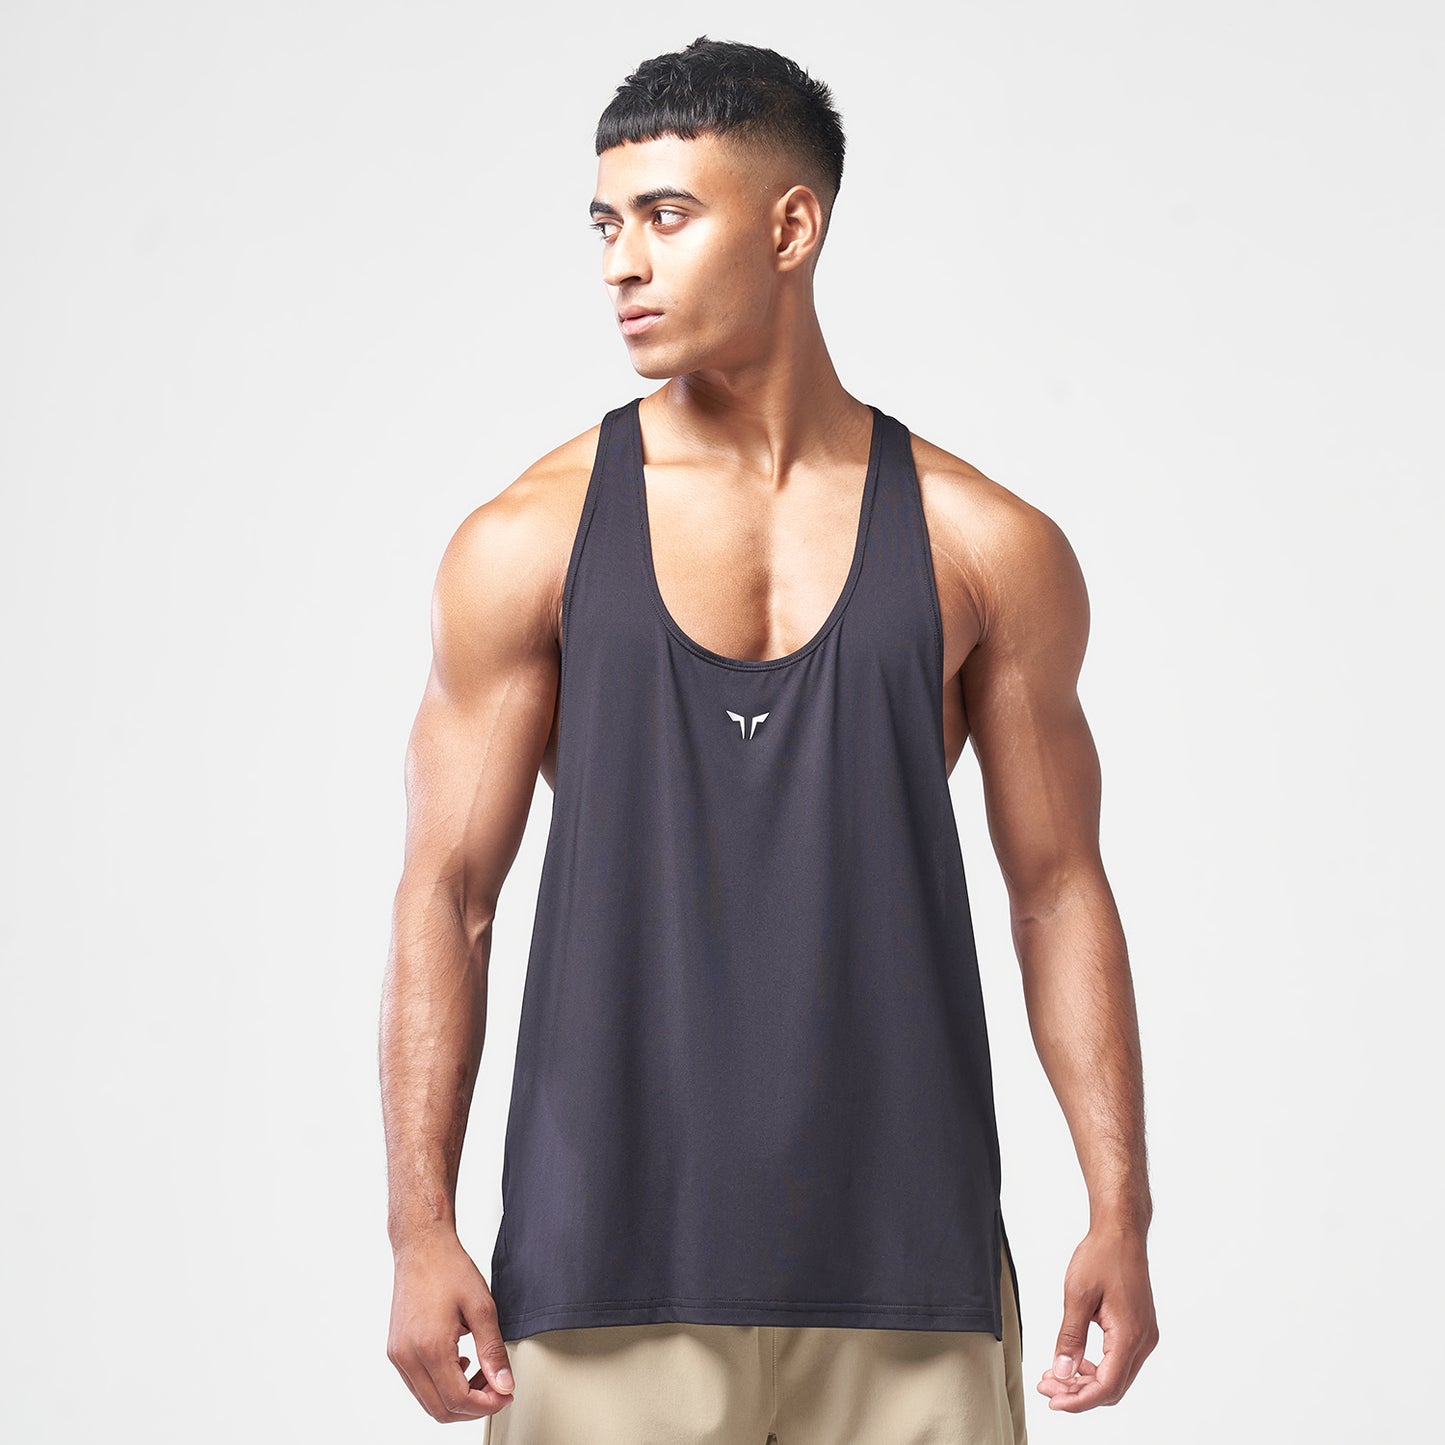 squatwolf-gym-wear-essential-gym-stringer-black-stringer-vests-for-men